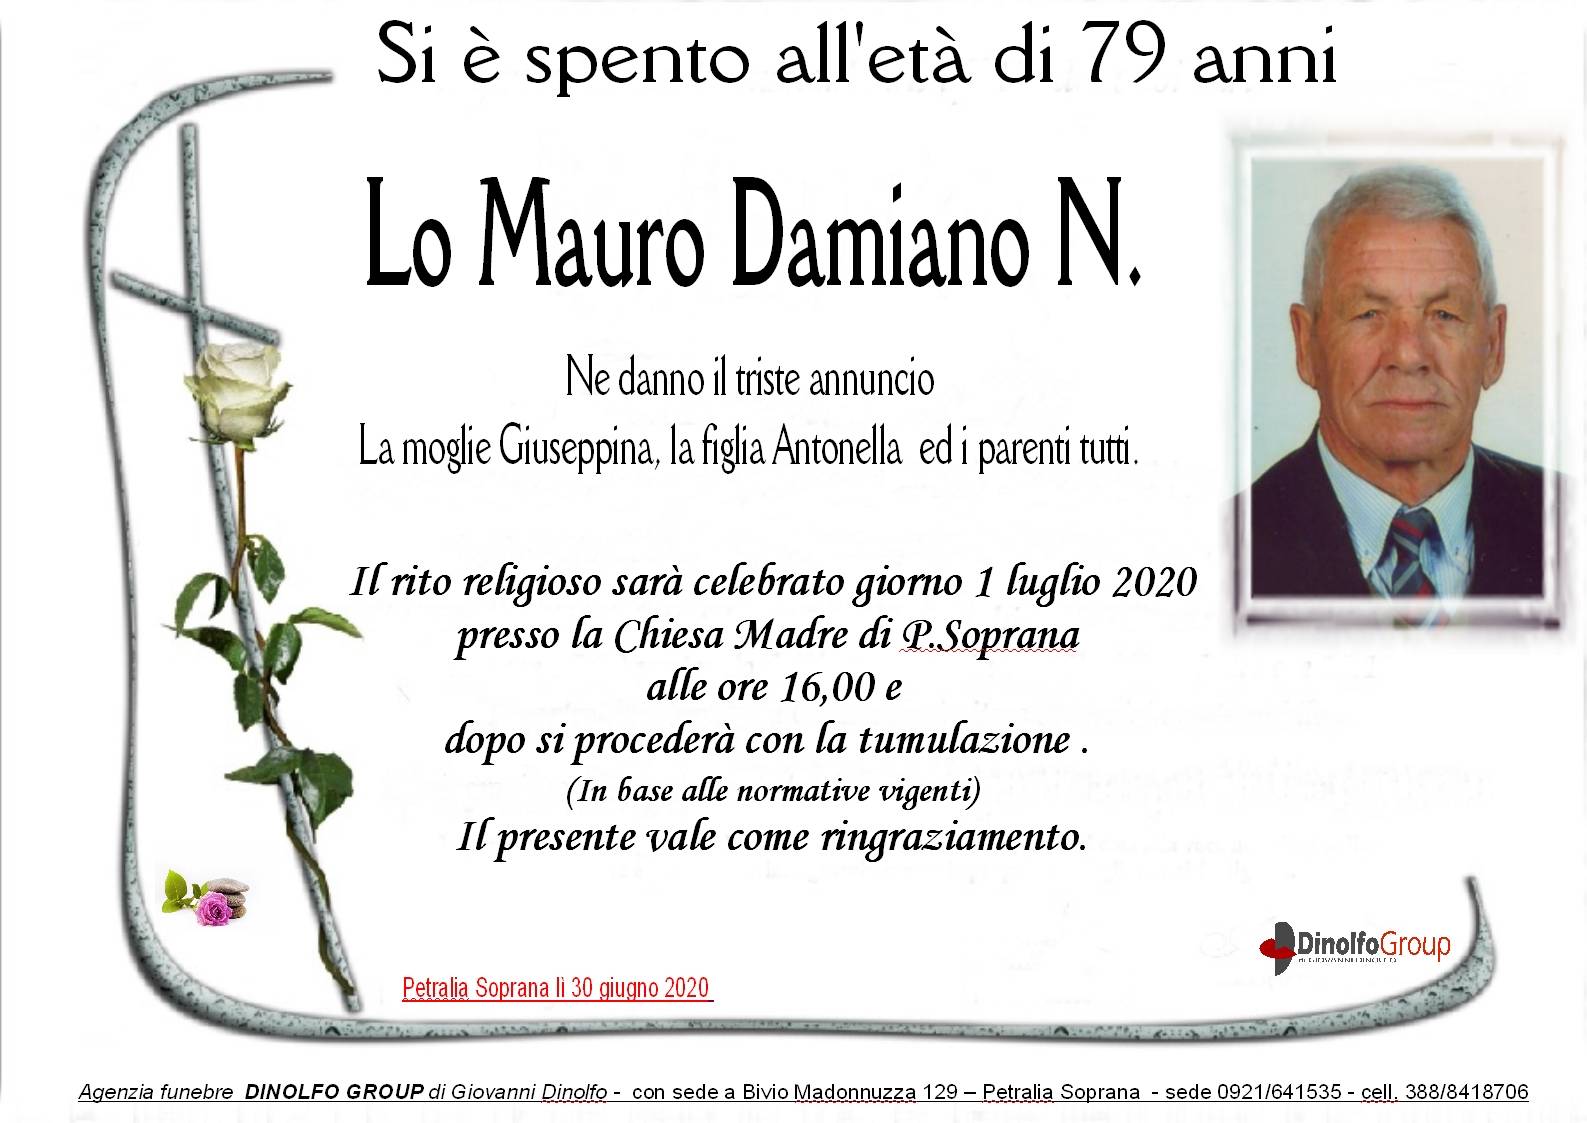 Damiano Natale Lo Mauro